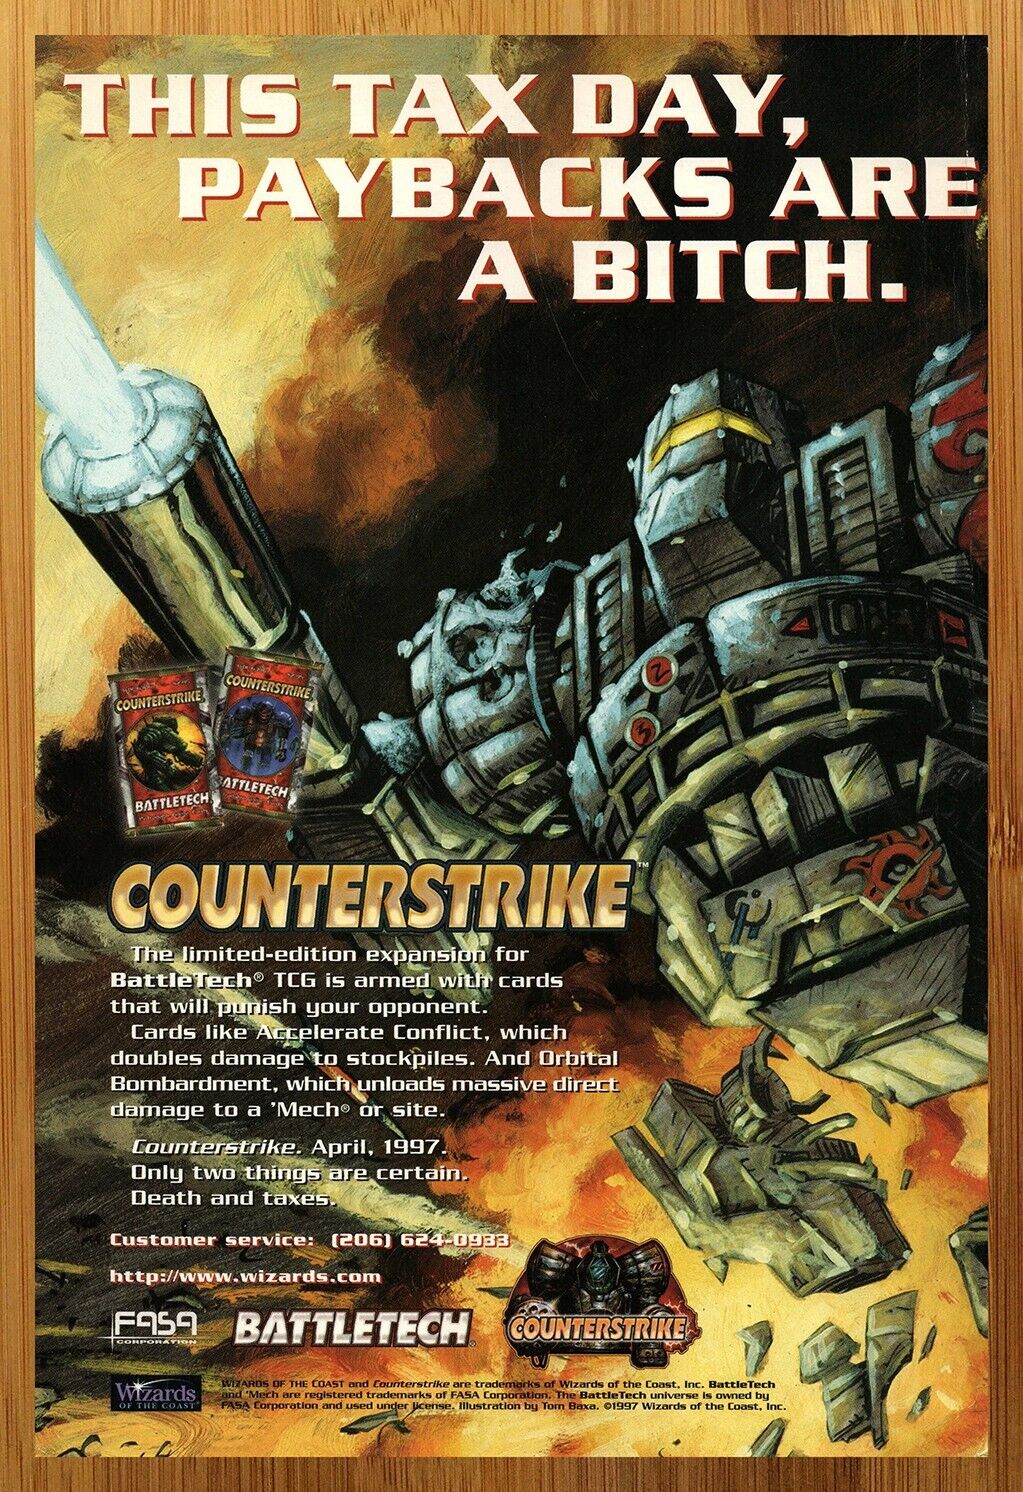 1997 Battletech TCG Counterstrike Print Ad/Poster Mech CCG Card Game Promo Art